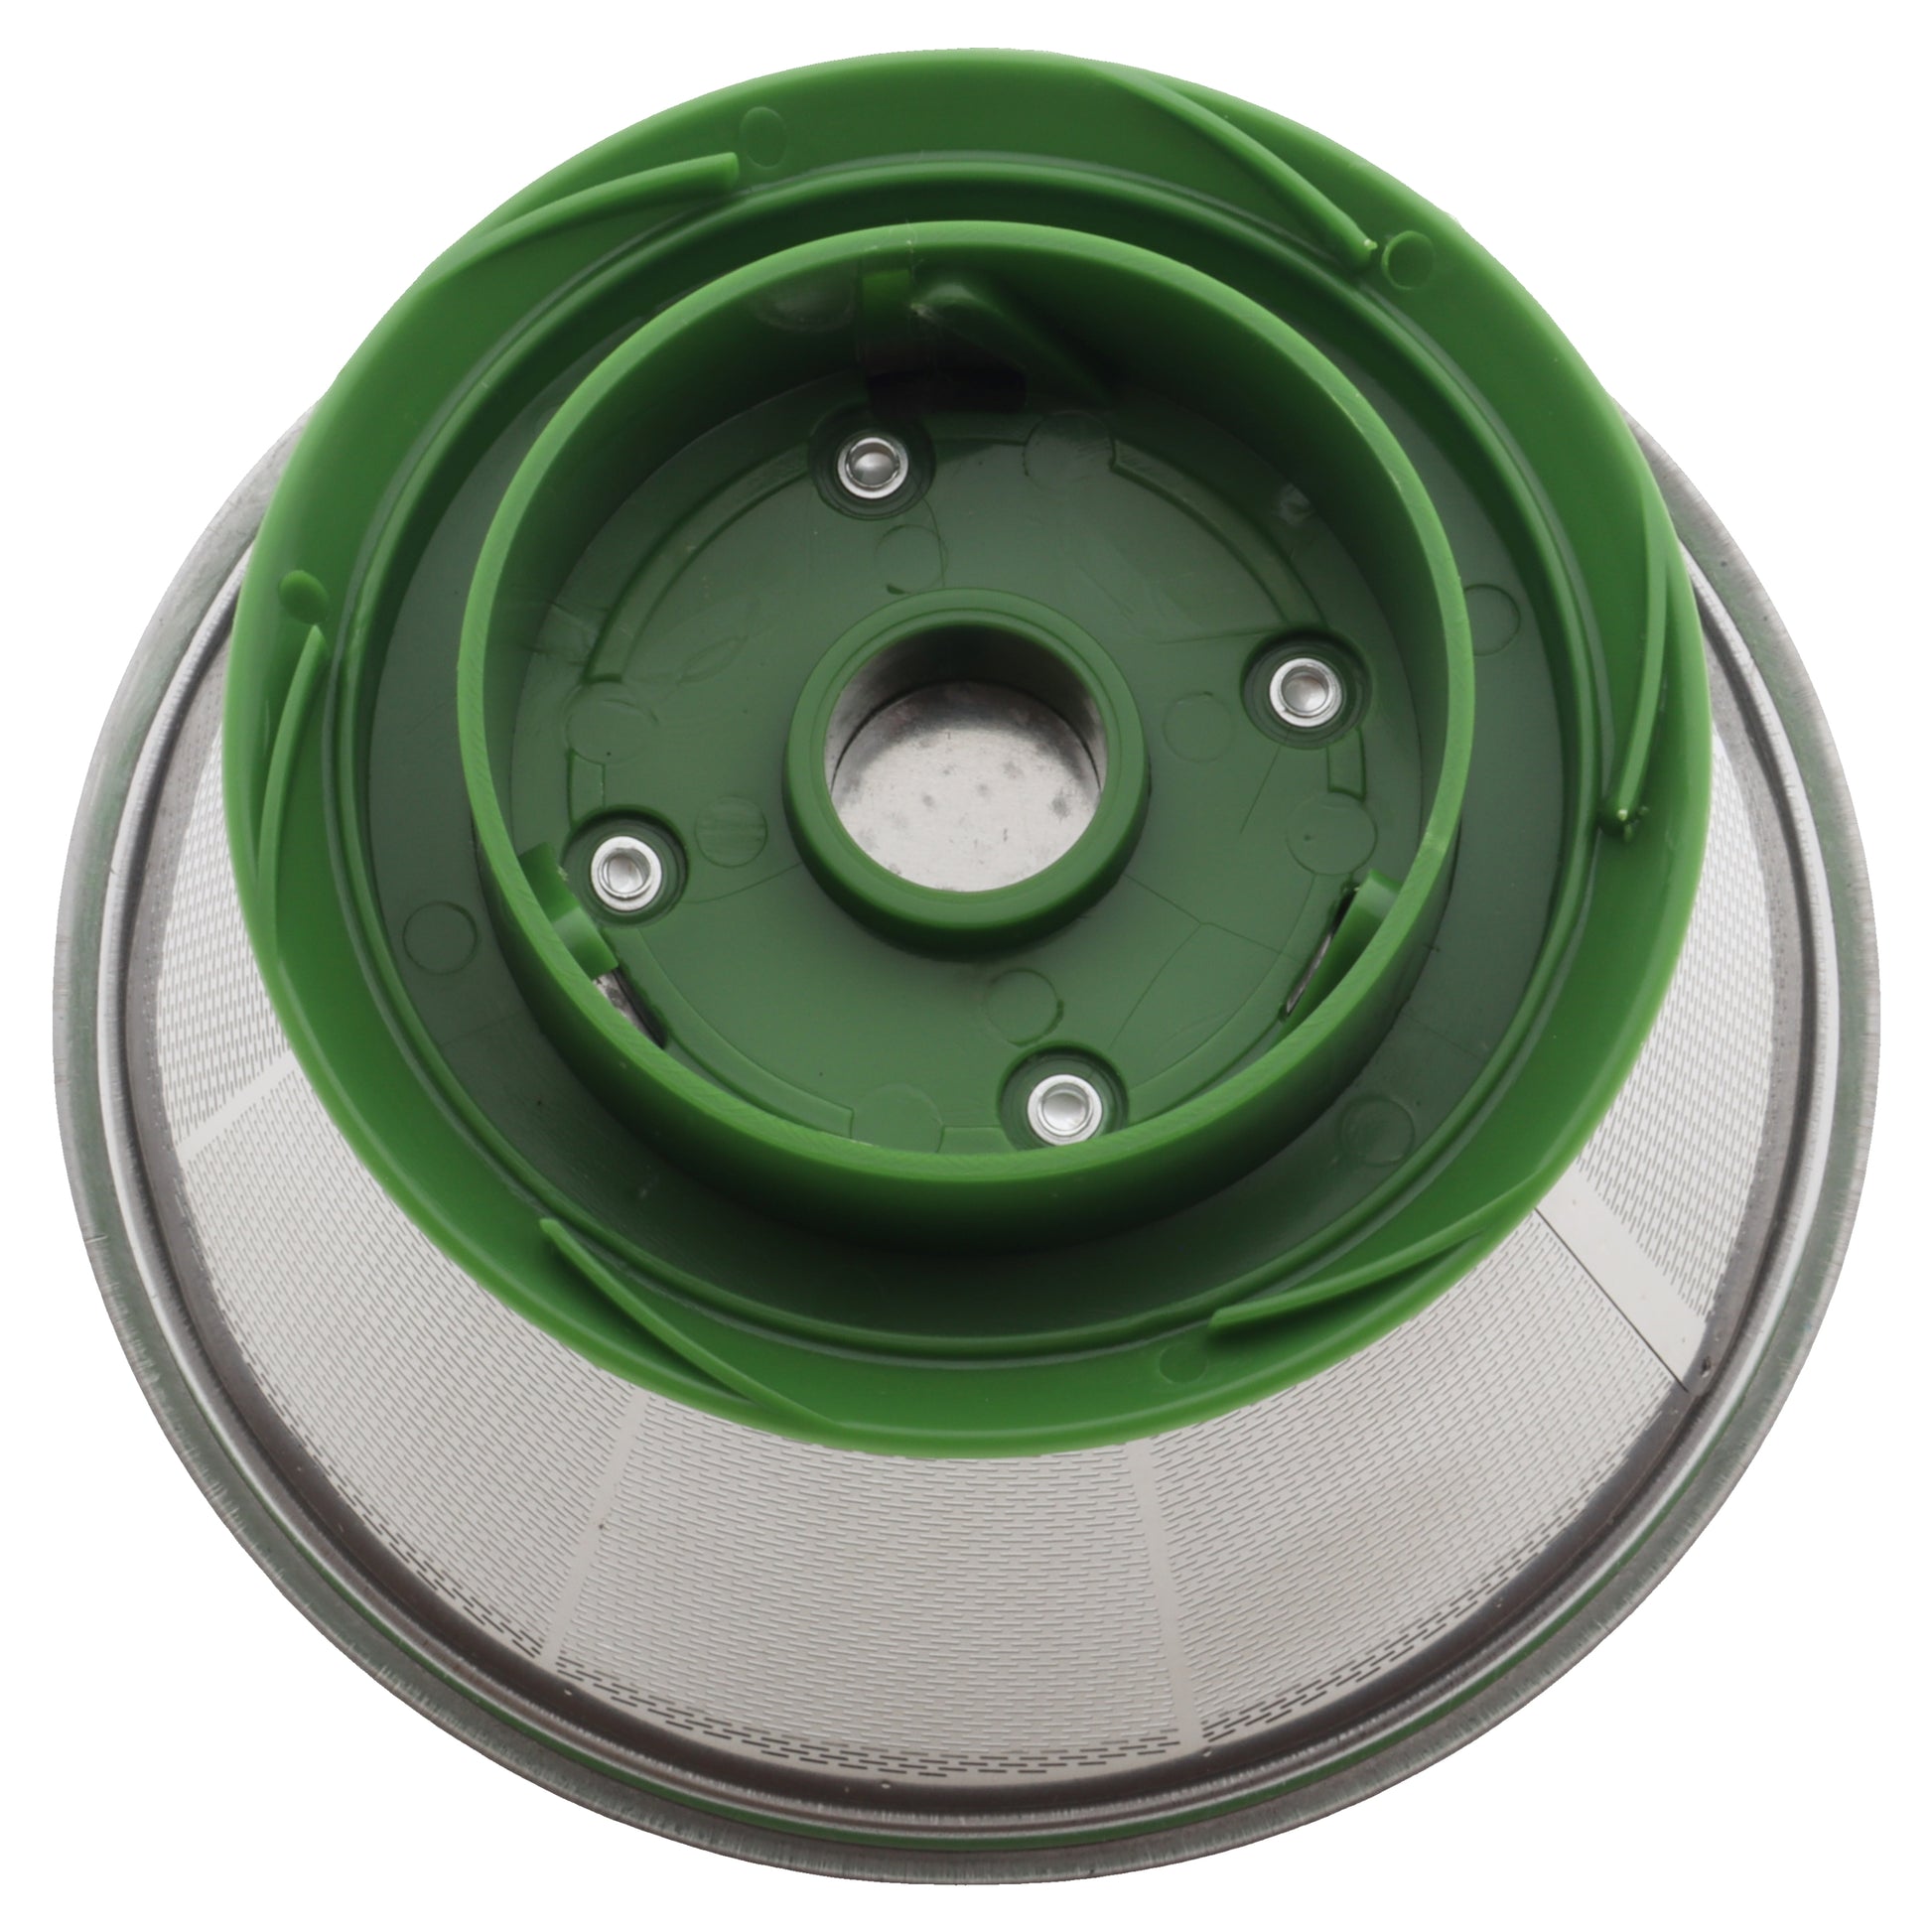 Taurus filtro setaccio metallico verde centrifuga 924683 Liquafresh NT-0414